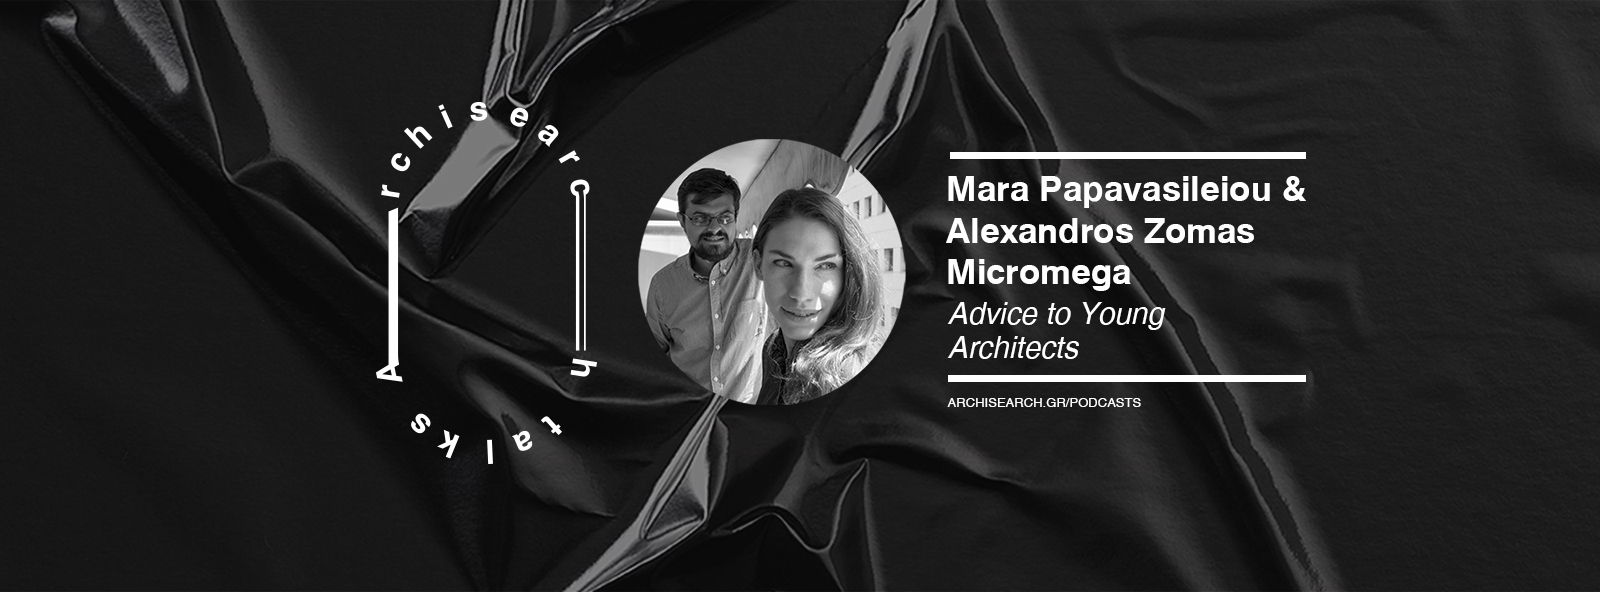 Archisearch Archisearch Talks: Mara Papavasileiou & Alexandros Zomas - Podcast Recap